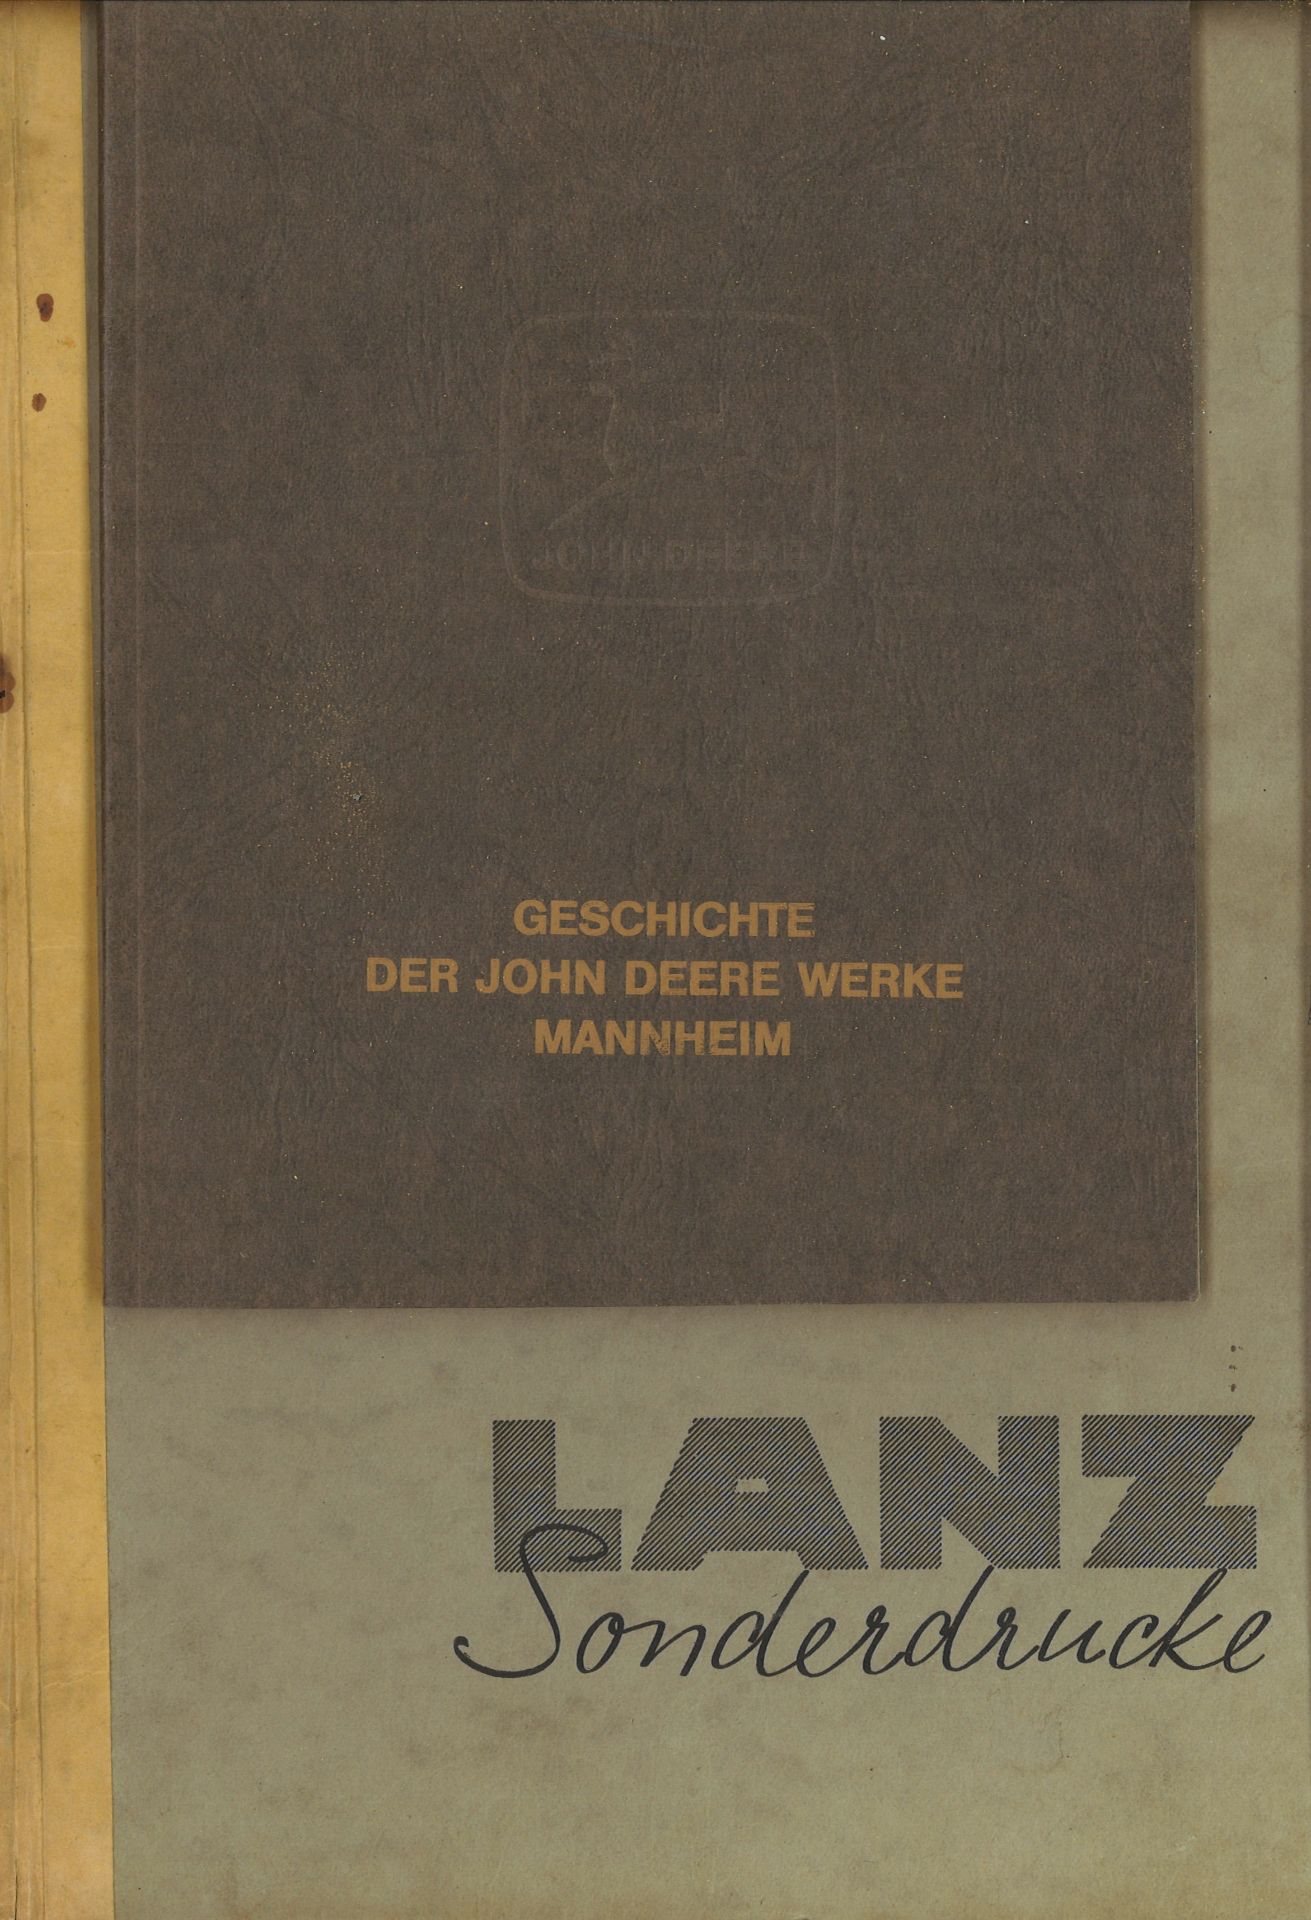 Lanz Sonderdrucke und Geschichte der John Deere Werke Mannheim